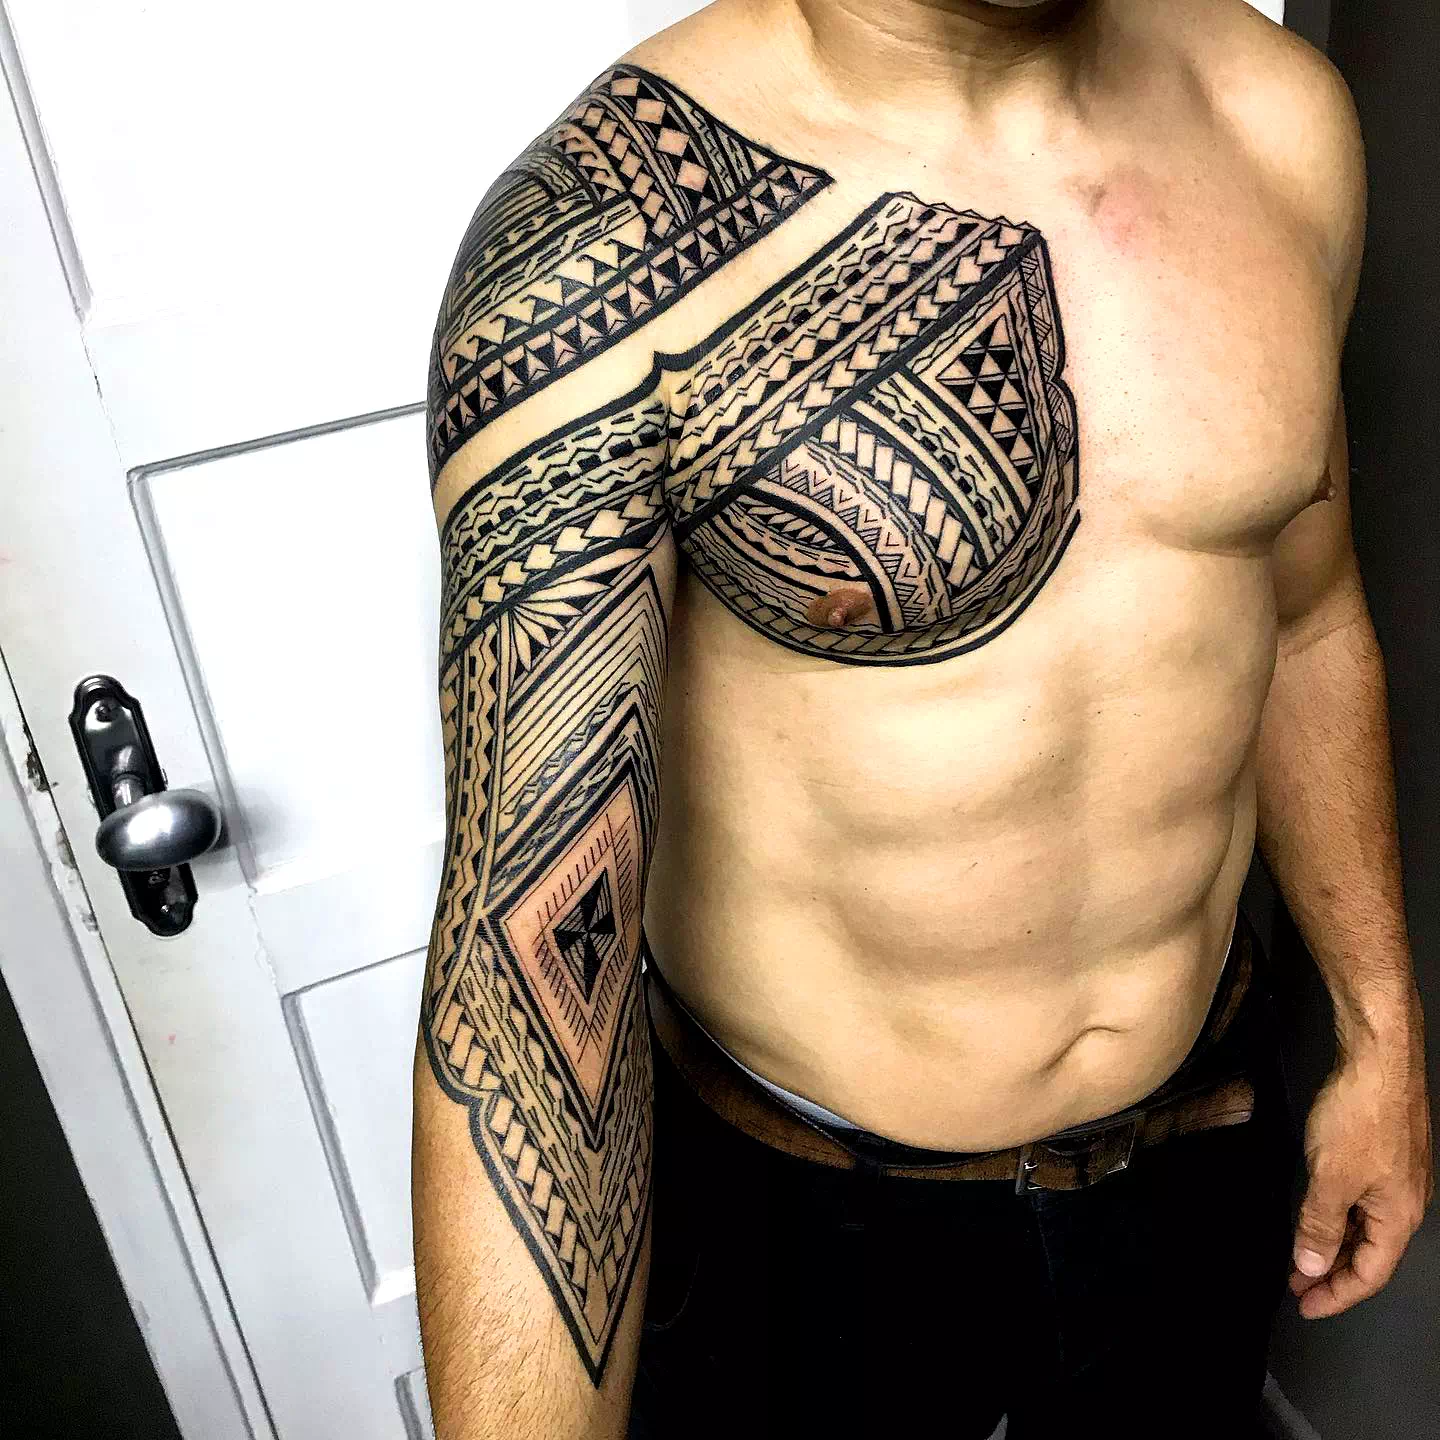 Tatuajes samoanos